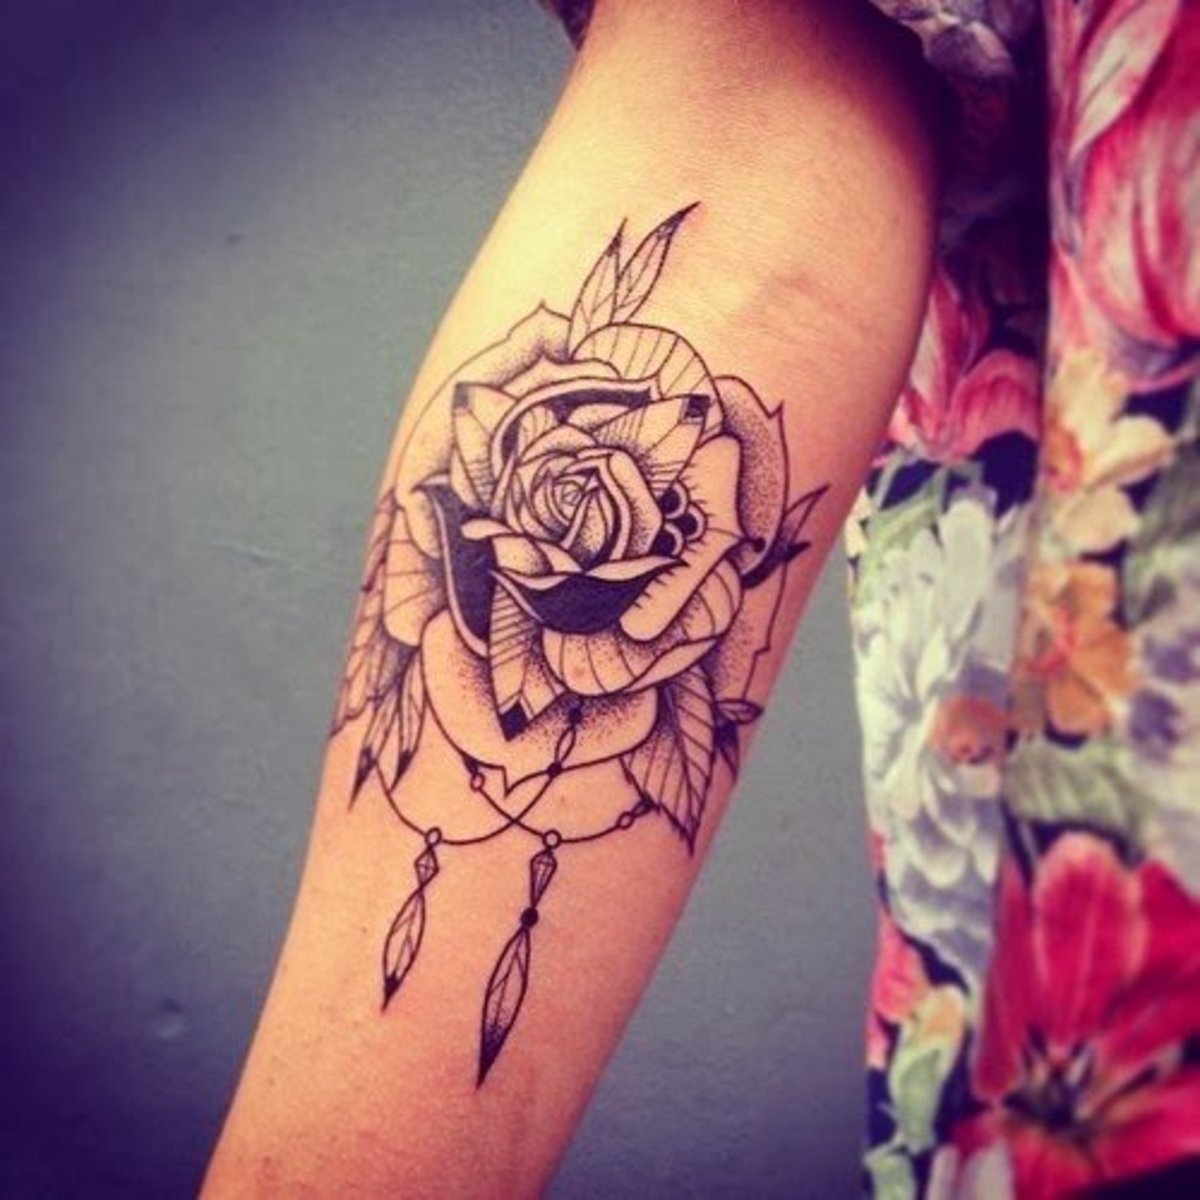 Floral Flower Tattoo Designs For Men | TattooMenu